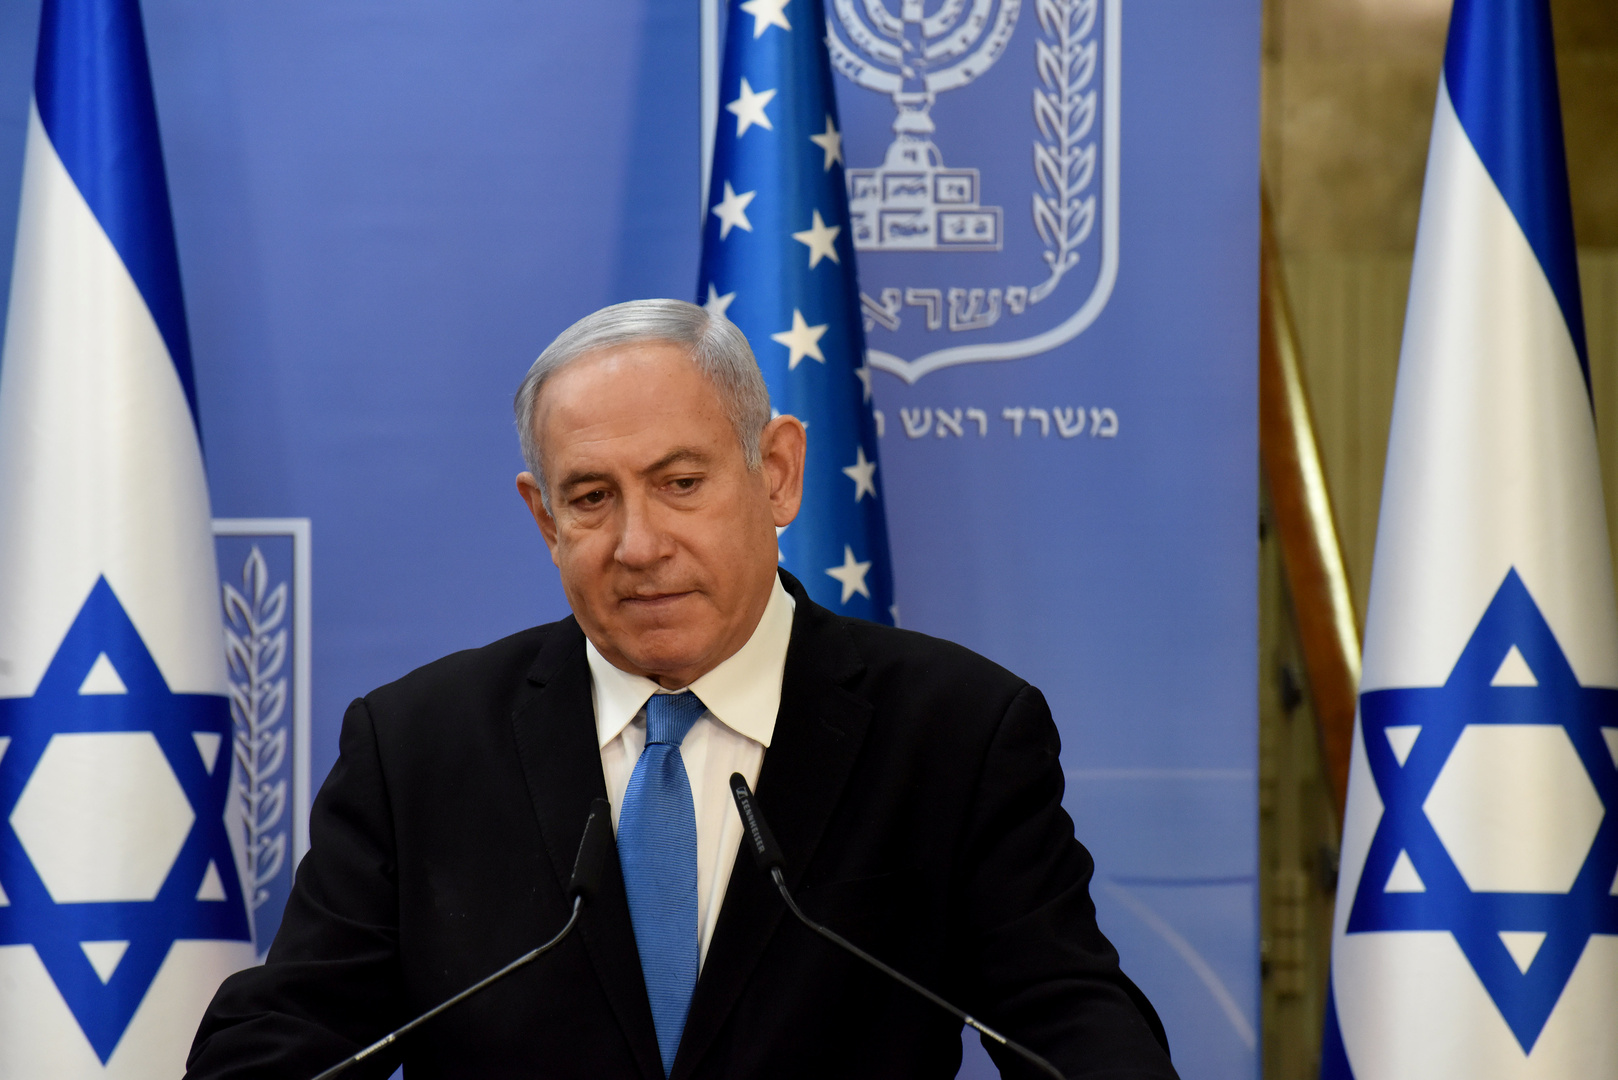 وسائل إعلام: الإمارات تلغي اللقاء مع إسرائيل والولايات المتحدة بسبب تصريحات نتنياهو